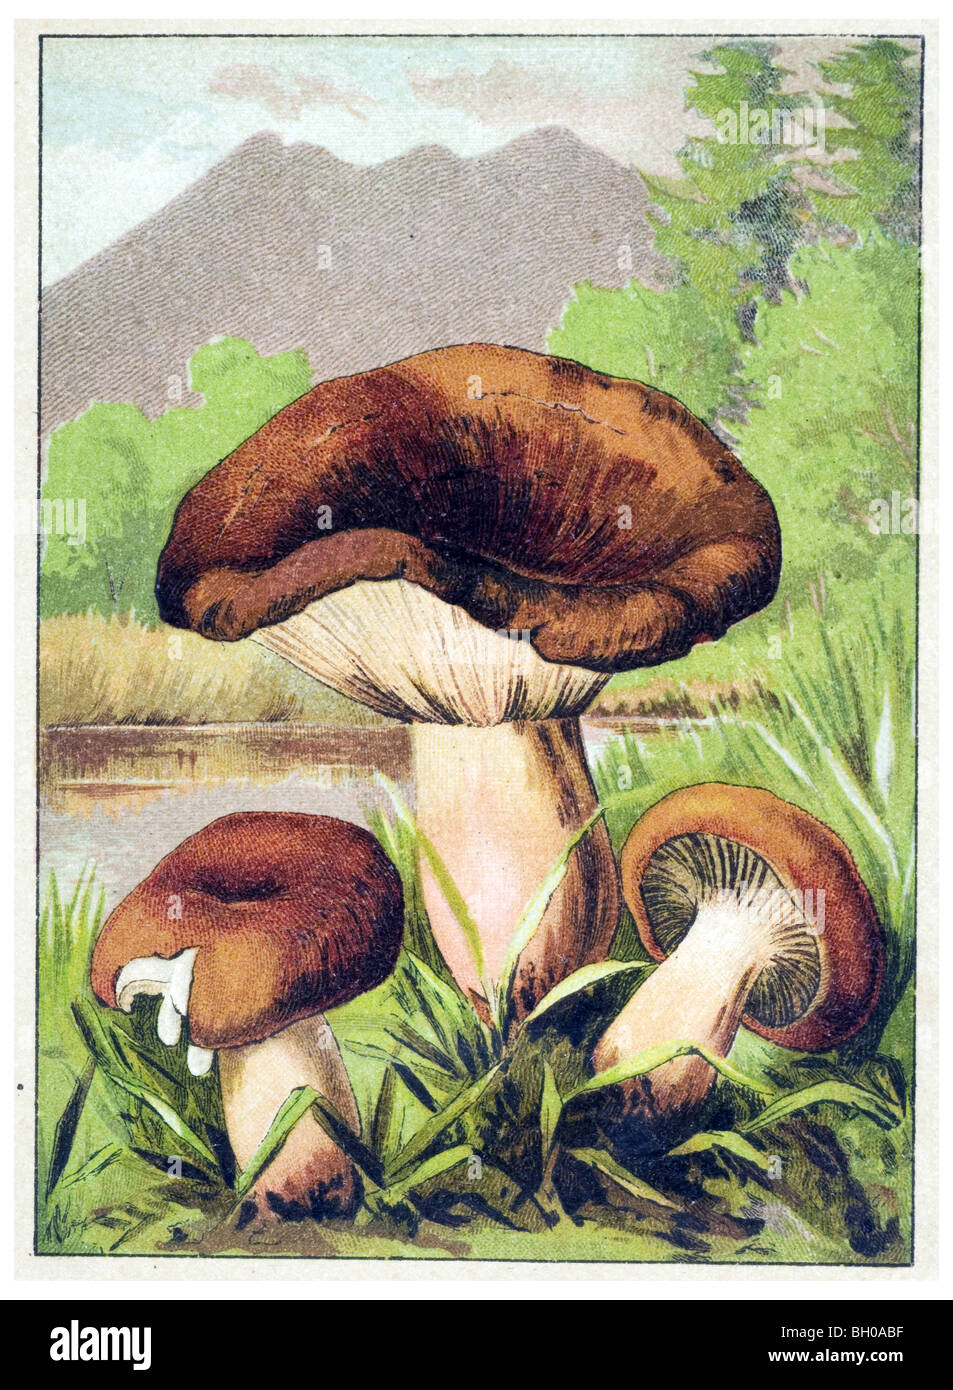 Lactarius volemus mushroom fungus Stock Photo